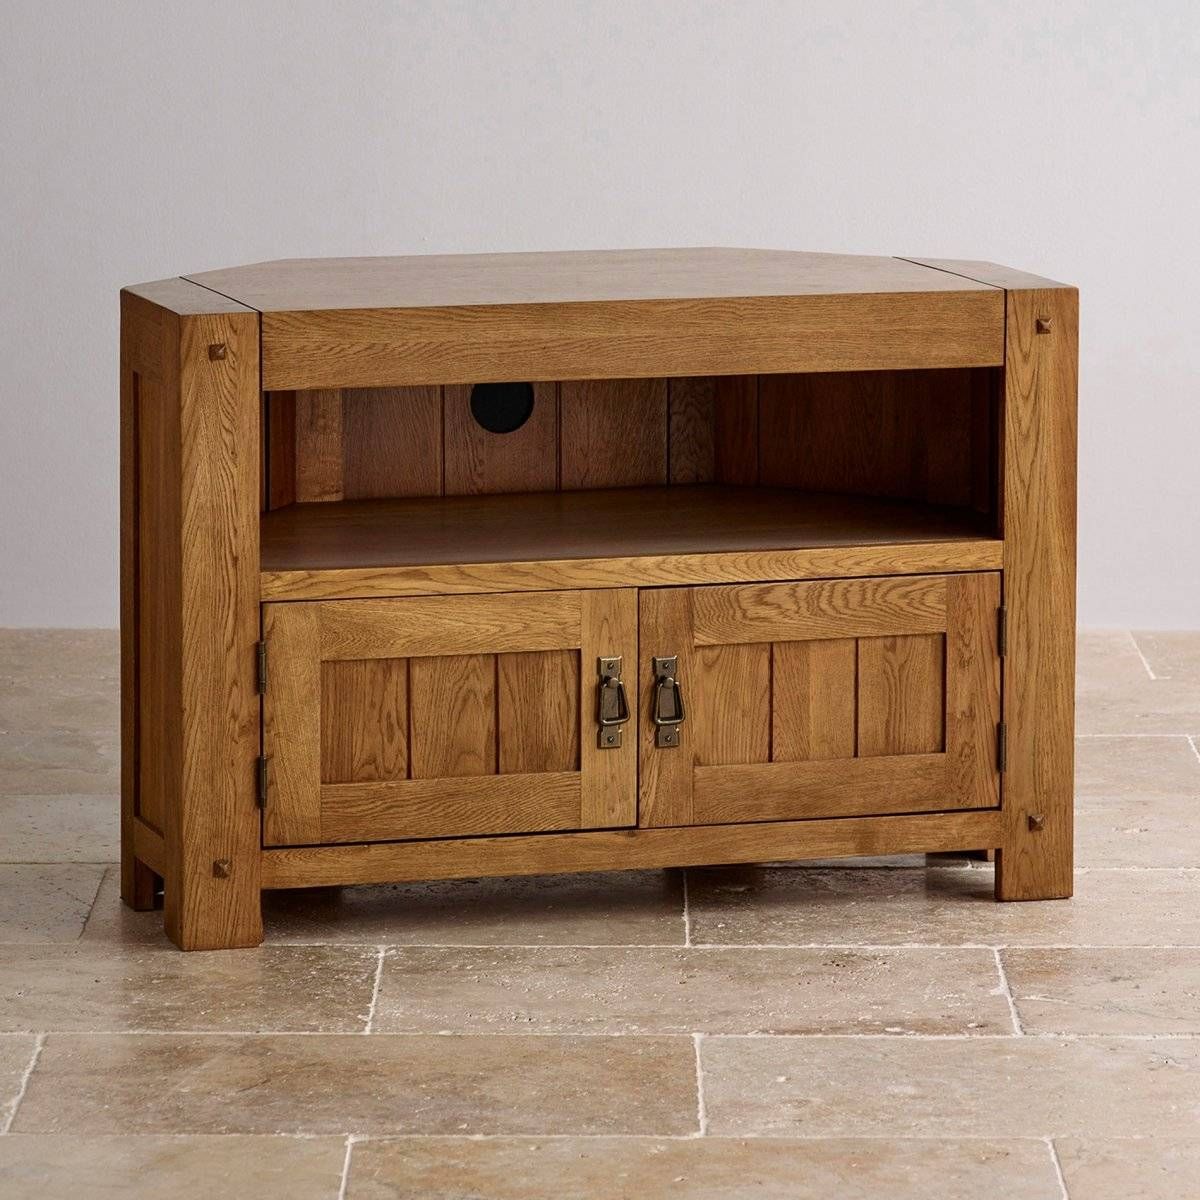 Quercus Corner Tv Cabinet In Rustic Oak | Oak Furniture Land With Regard To Rustic Oak Tv Stands (View 2 of 15)